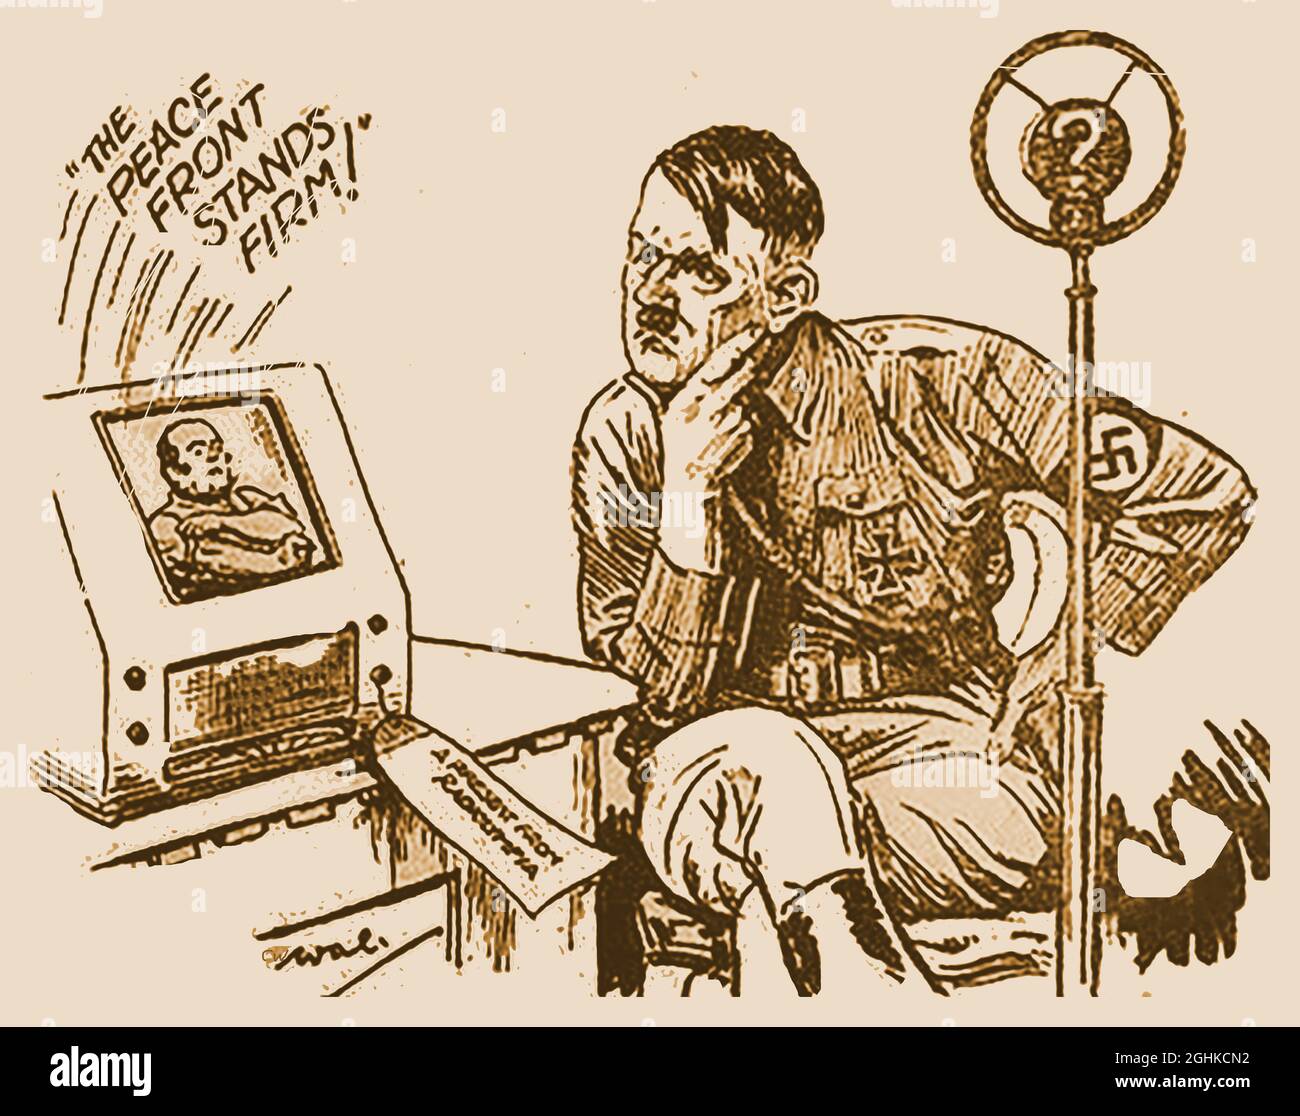 Nouvelles du monde Hitler Cartoon août 27 1939 (quatre jours avant le début de la Seconde Guerre mondiale. Le téléviseur porte une étiquette indiquant « Un cadeau de Radiolympia ». Radiolympia, alias radio Show, était une exposition pionnière de matériel radiophonique et plus tard télévisuel, qui s'est tenue chaque année à Olympia à Londres, en Angleterre. La première émission de télévision haute définition a été réalisée lors d'un test par la BBC à partir de l'exposition du 26 août 1936, la veille de l'apparition de la bande dessinée dans le journal. Banque D'Images